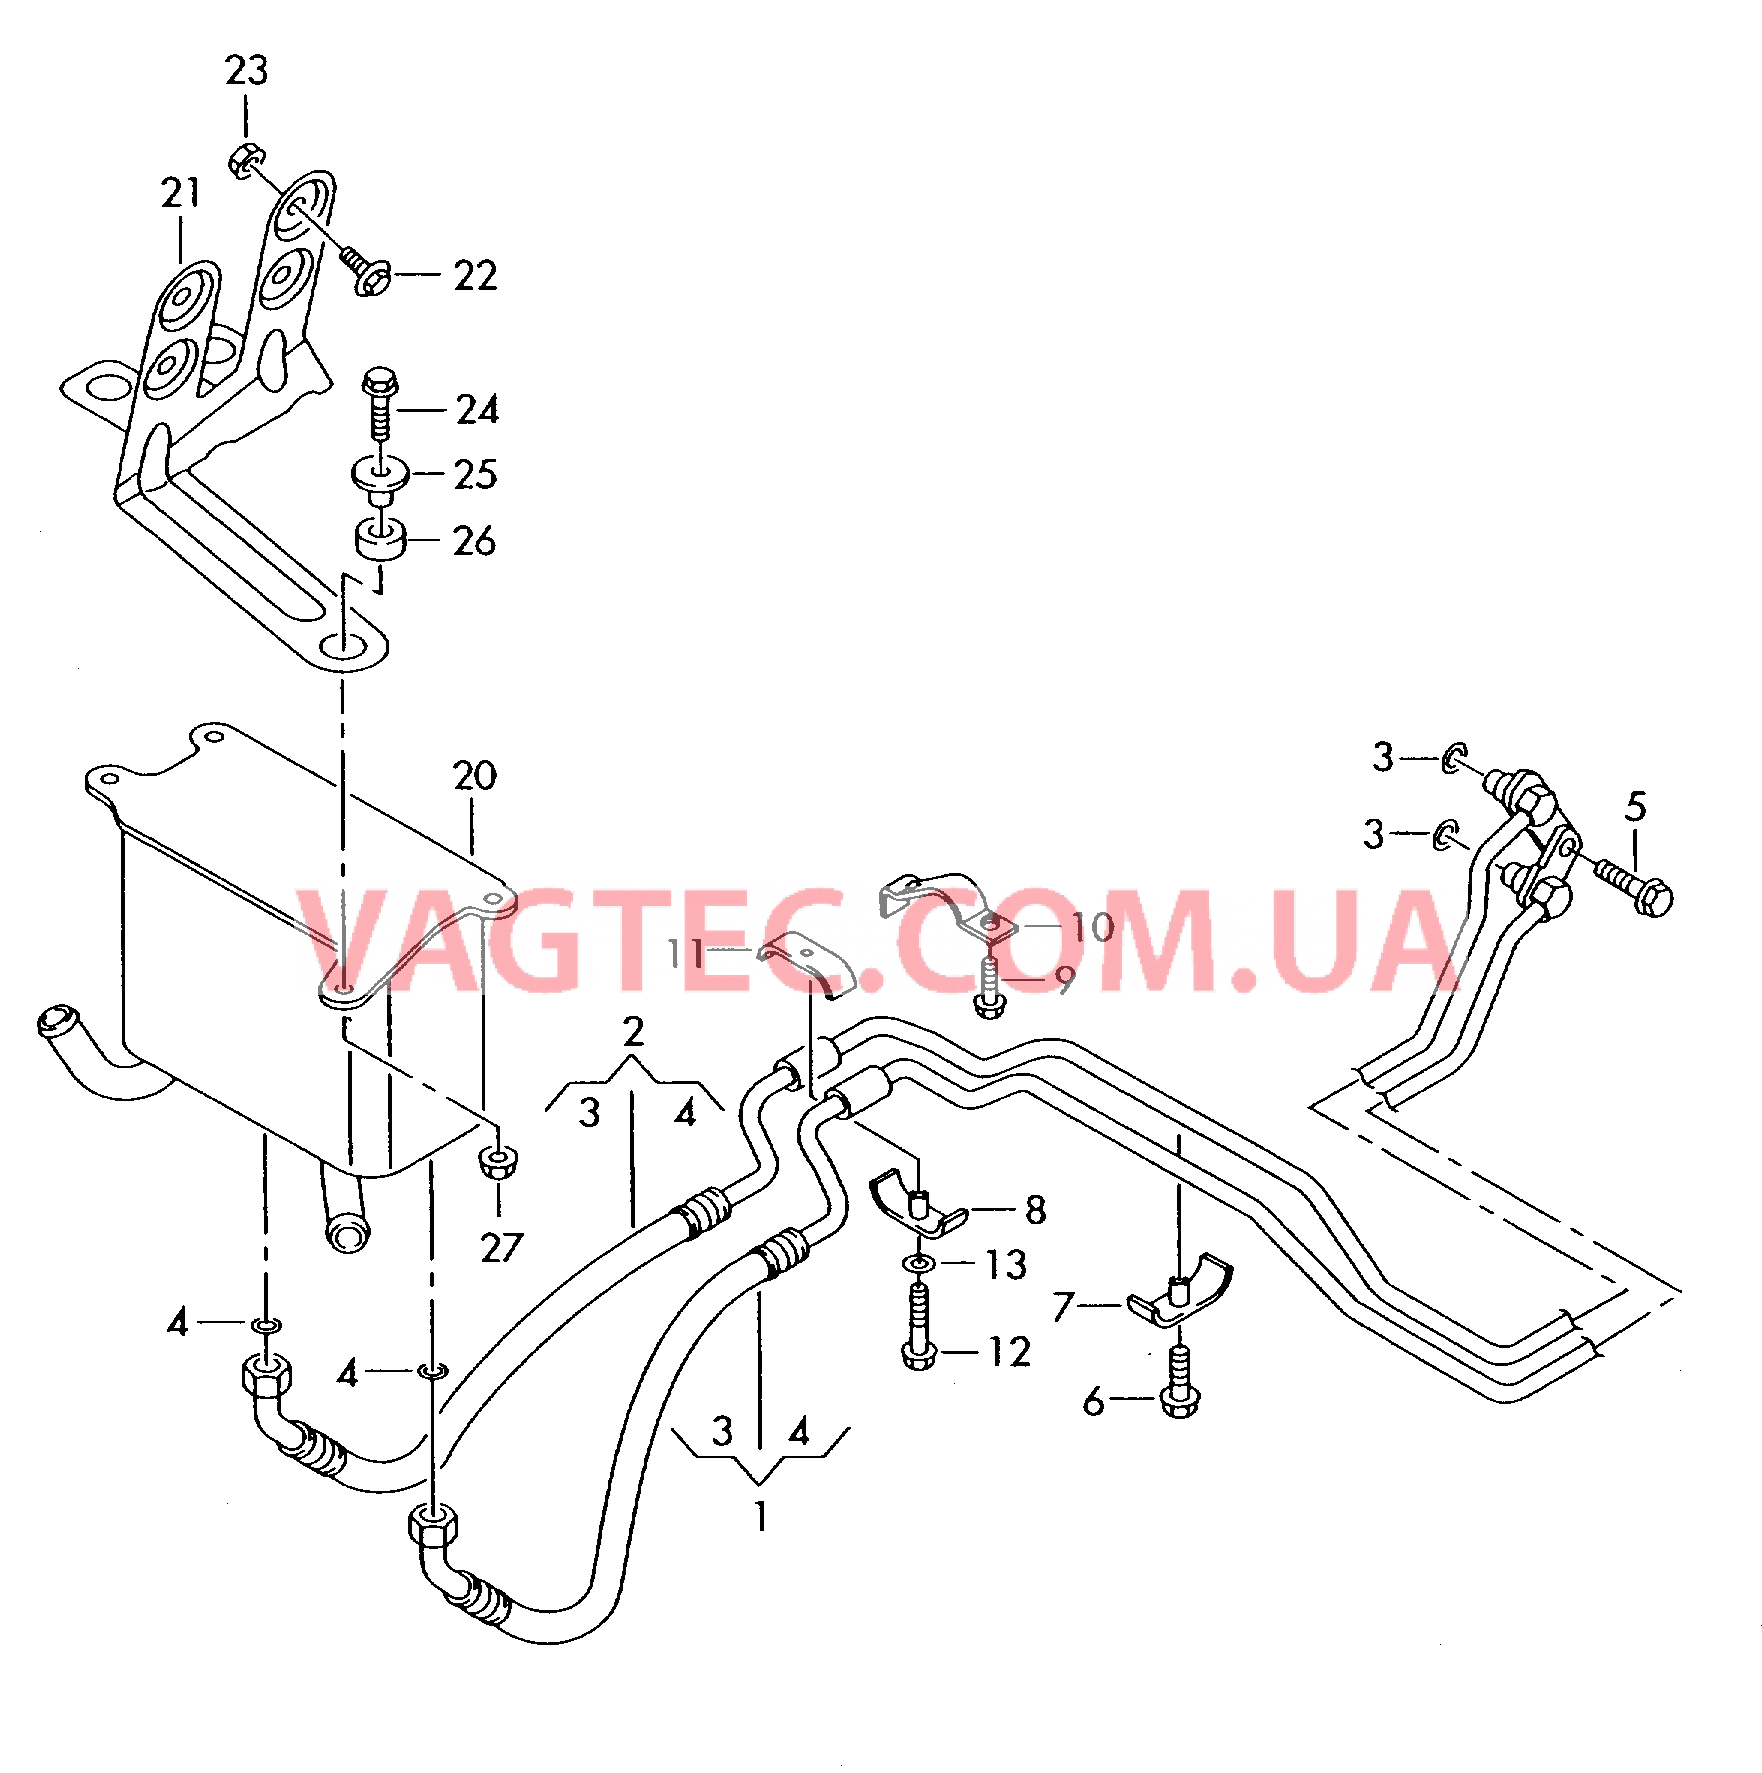 Напорный маслопровод для охлаждения масла коробки передач  для 5-ступенчатой АКП  для VOLKSWAGEN Phaeton 2003